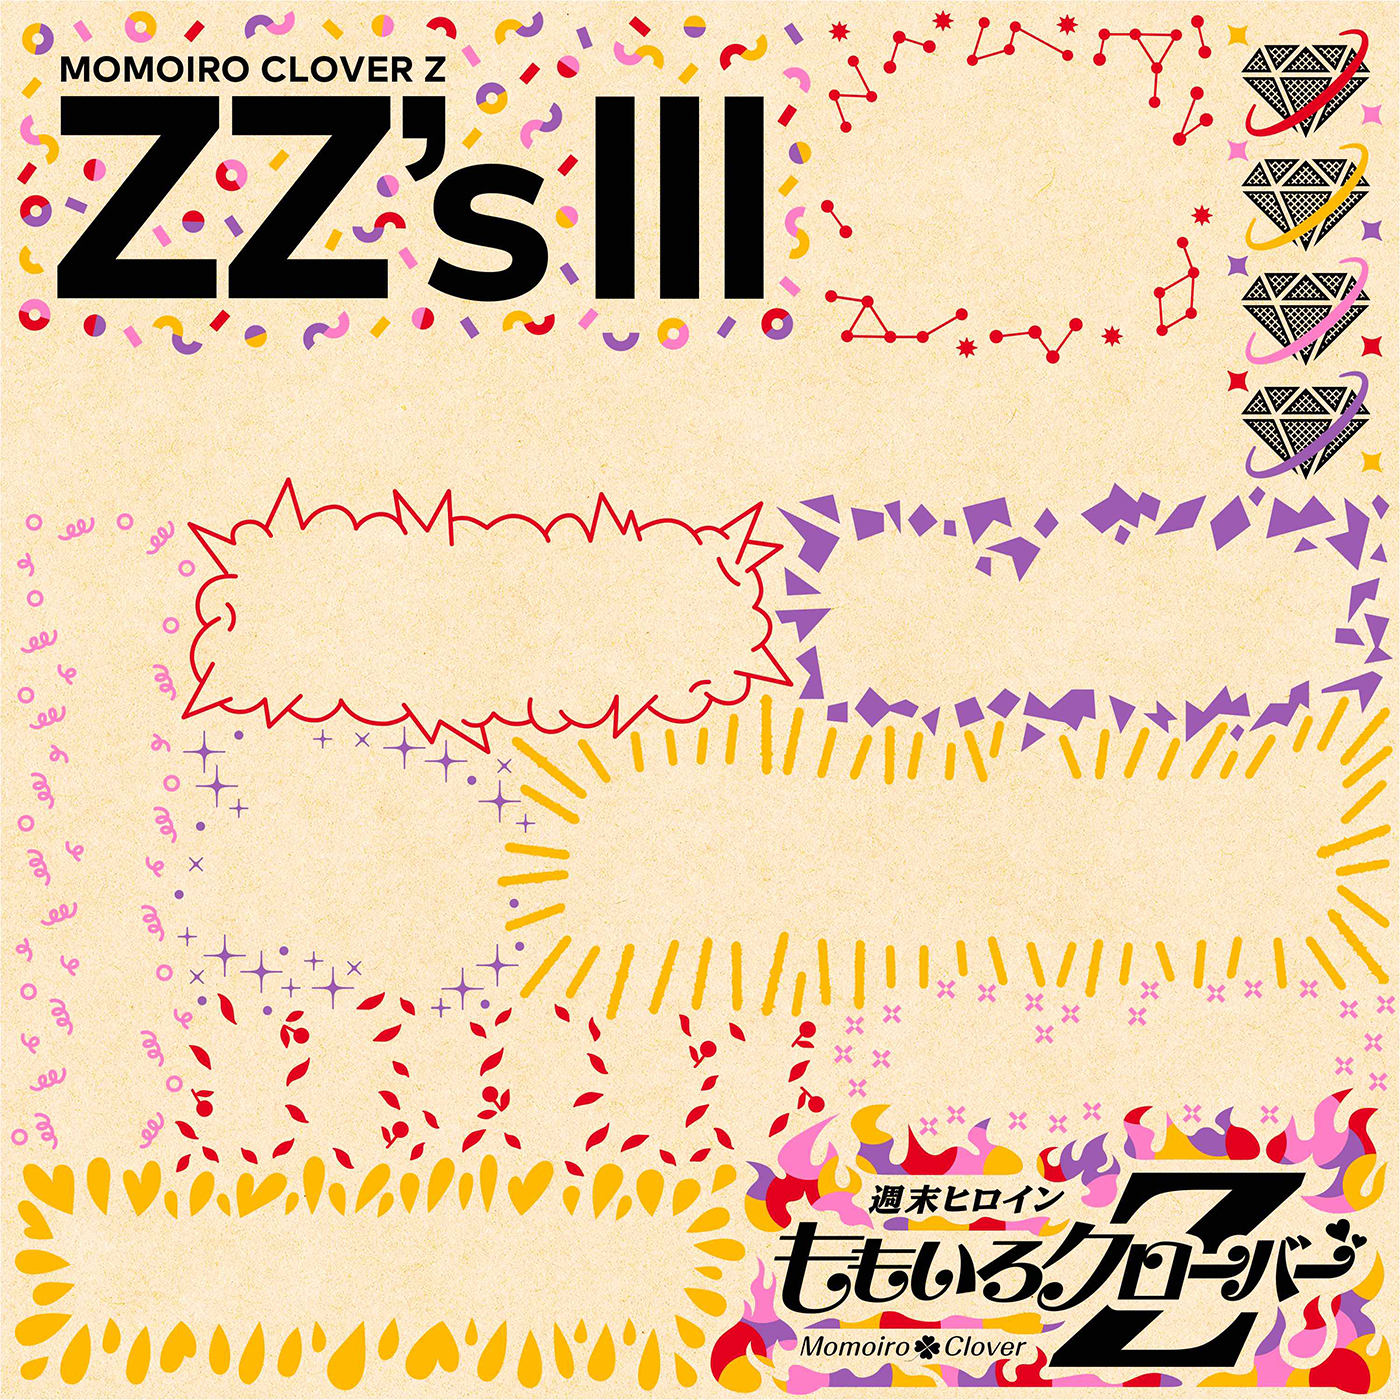 ももいろクローバーZ、セルフリメイクアルバム第3弾『ZZ’s III』発売決定！ 収録曲を当てる企画もスタート